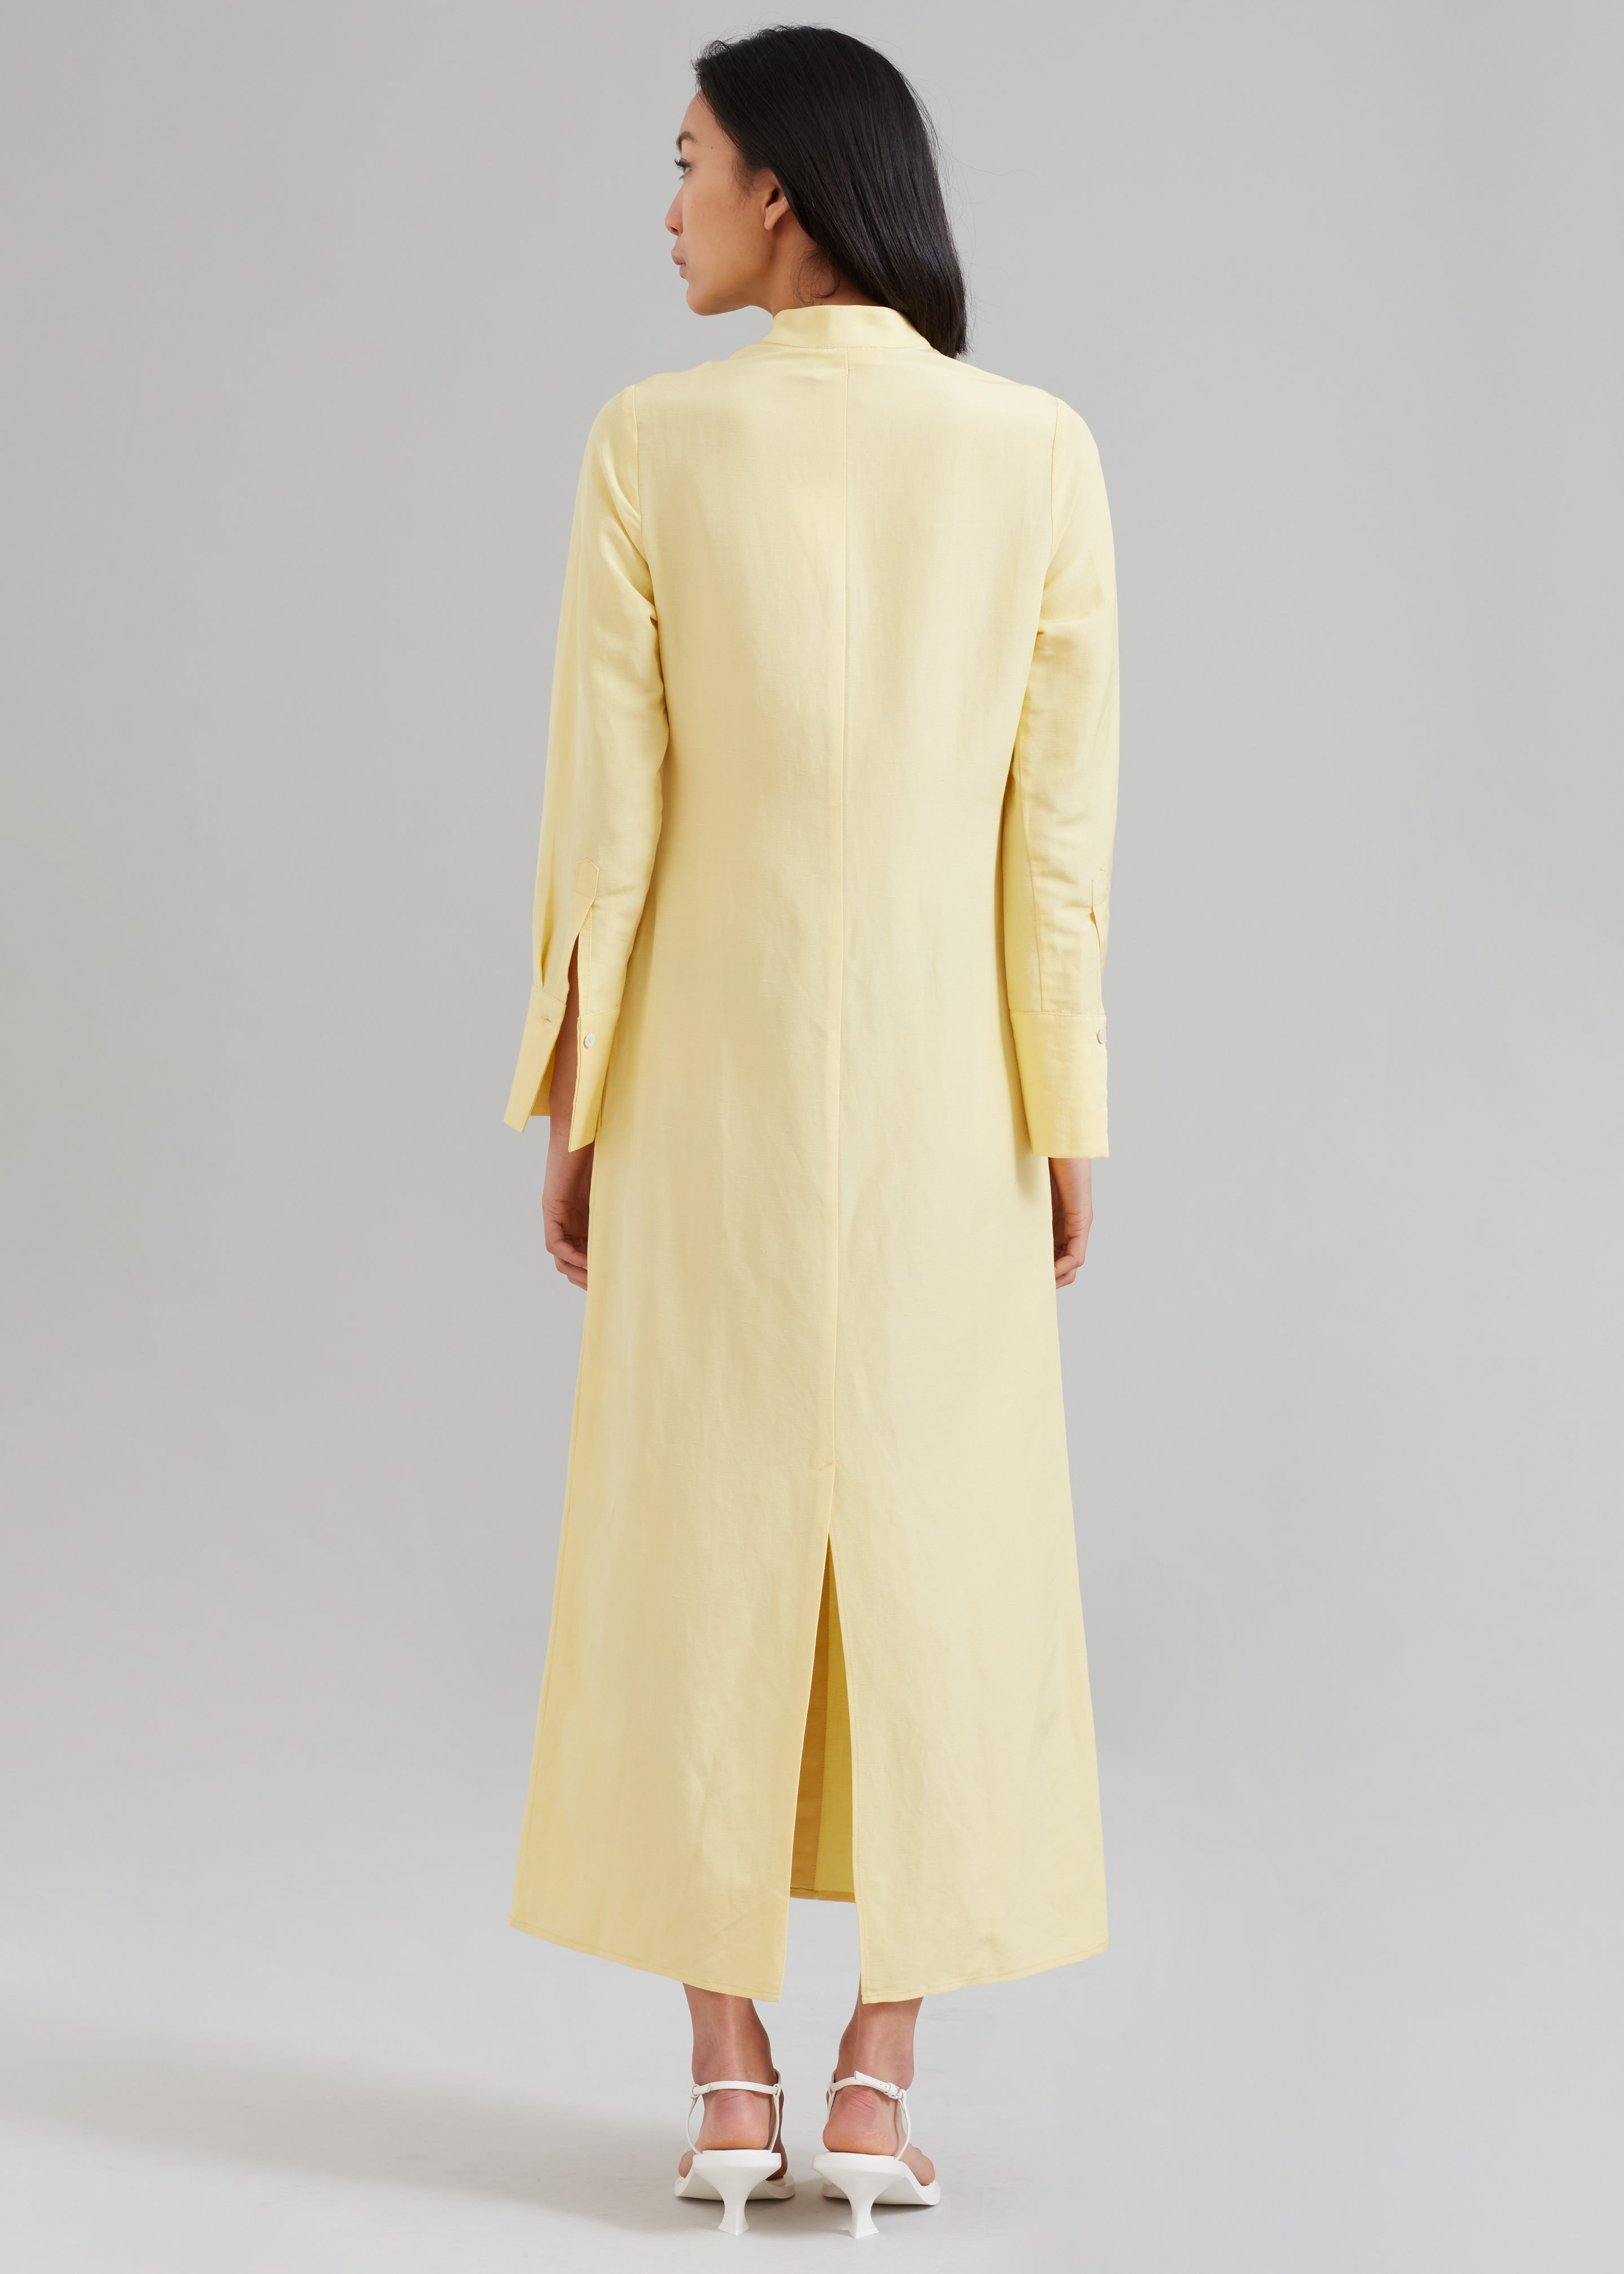 MATIN Collarless Shirt Dress - Butter - 6